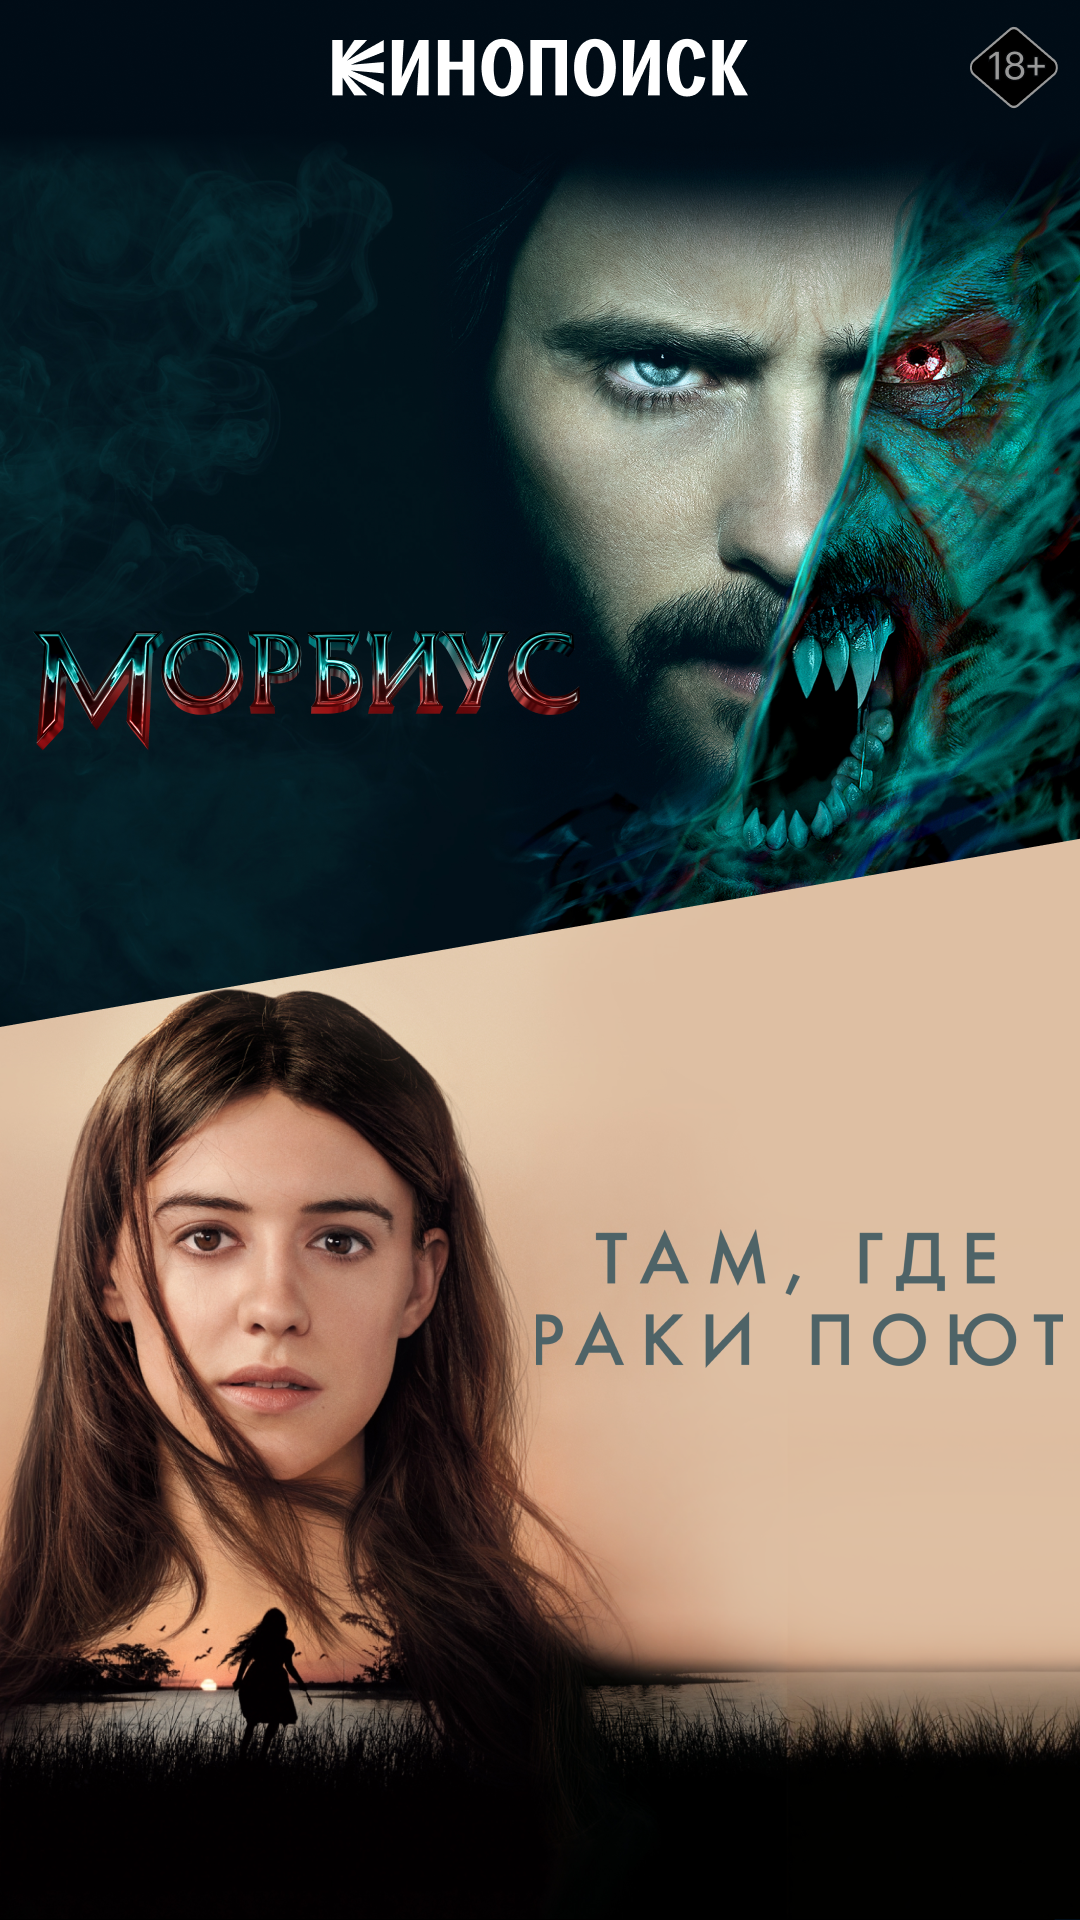 Яндекс Плюс: что дает казахстанцам мультисервисная подписка?